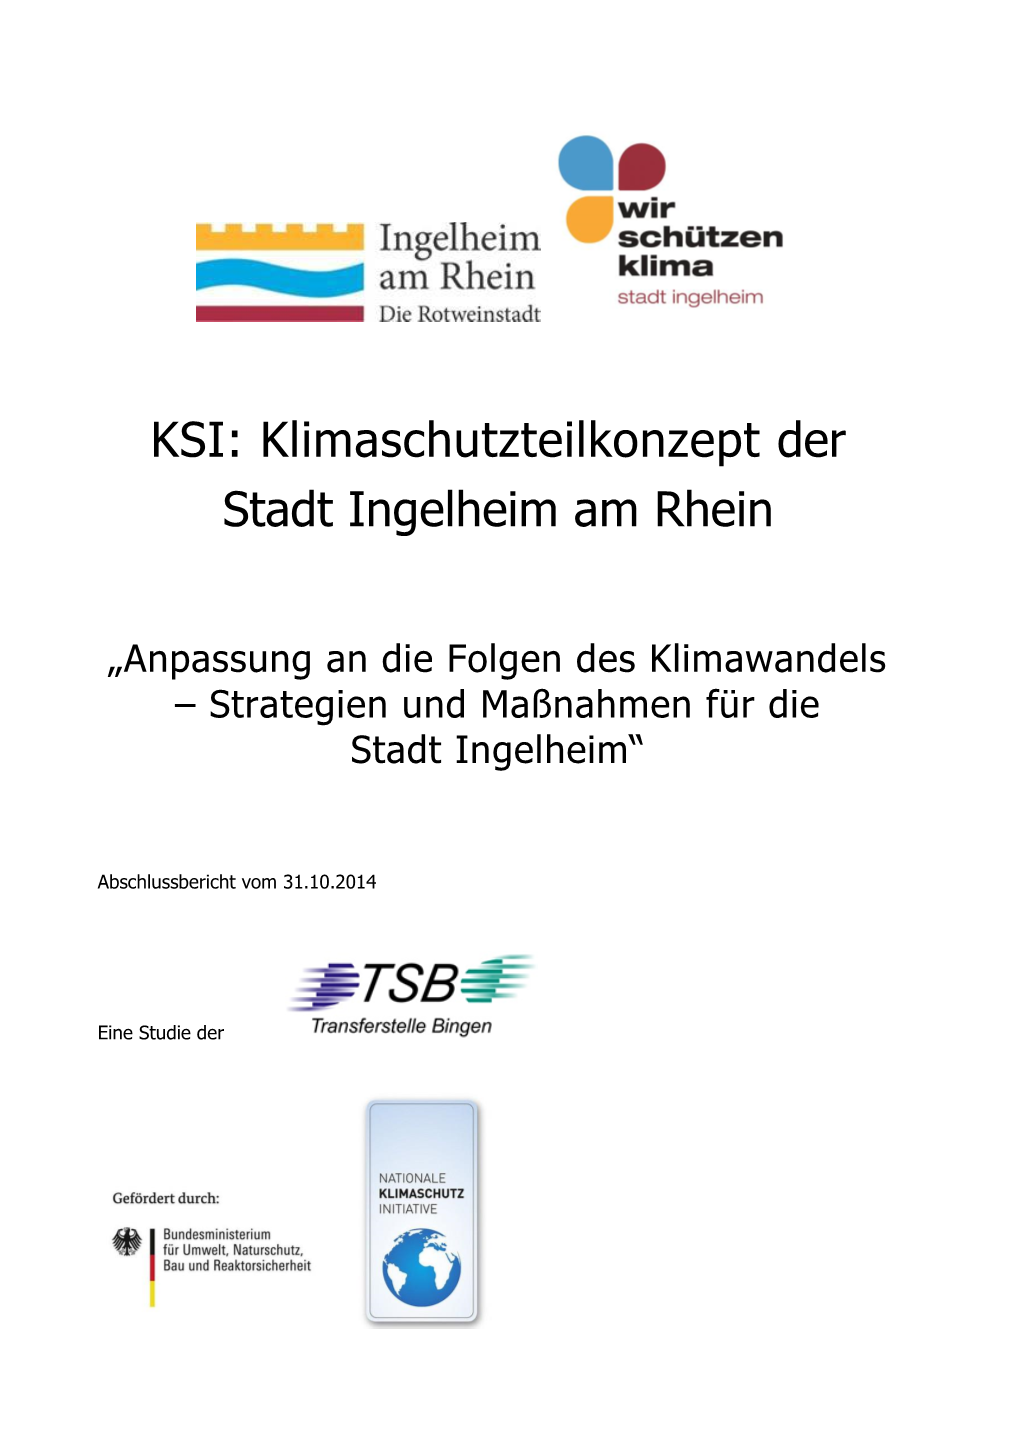 KSI: Klimaschutzteilkonzept Der Stadt Ingelheim Am Rhein